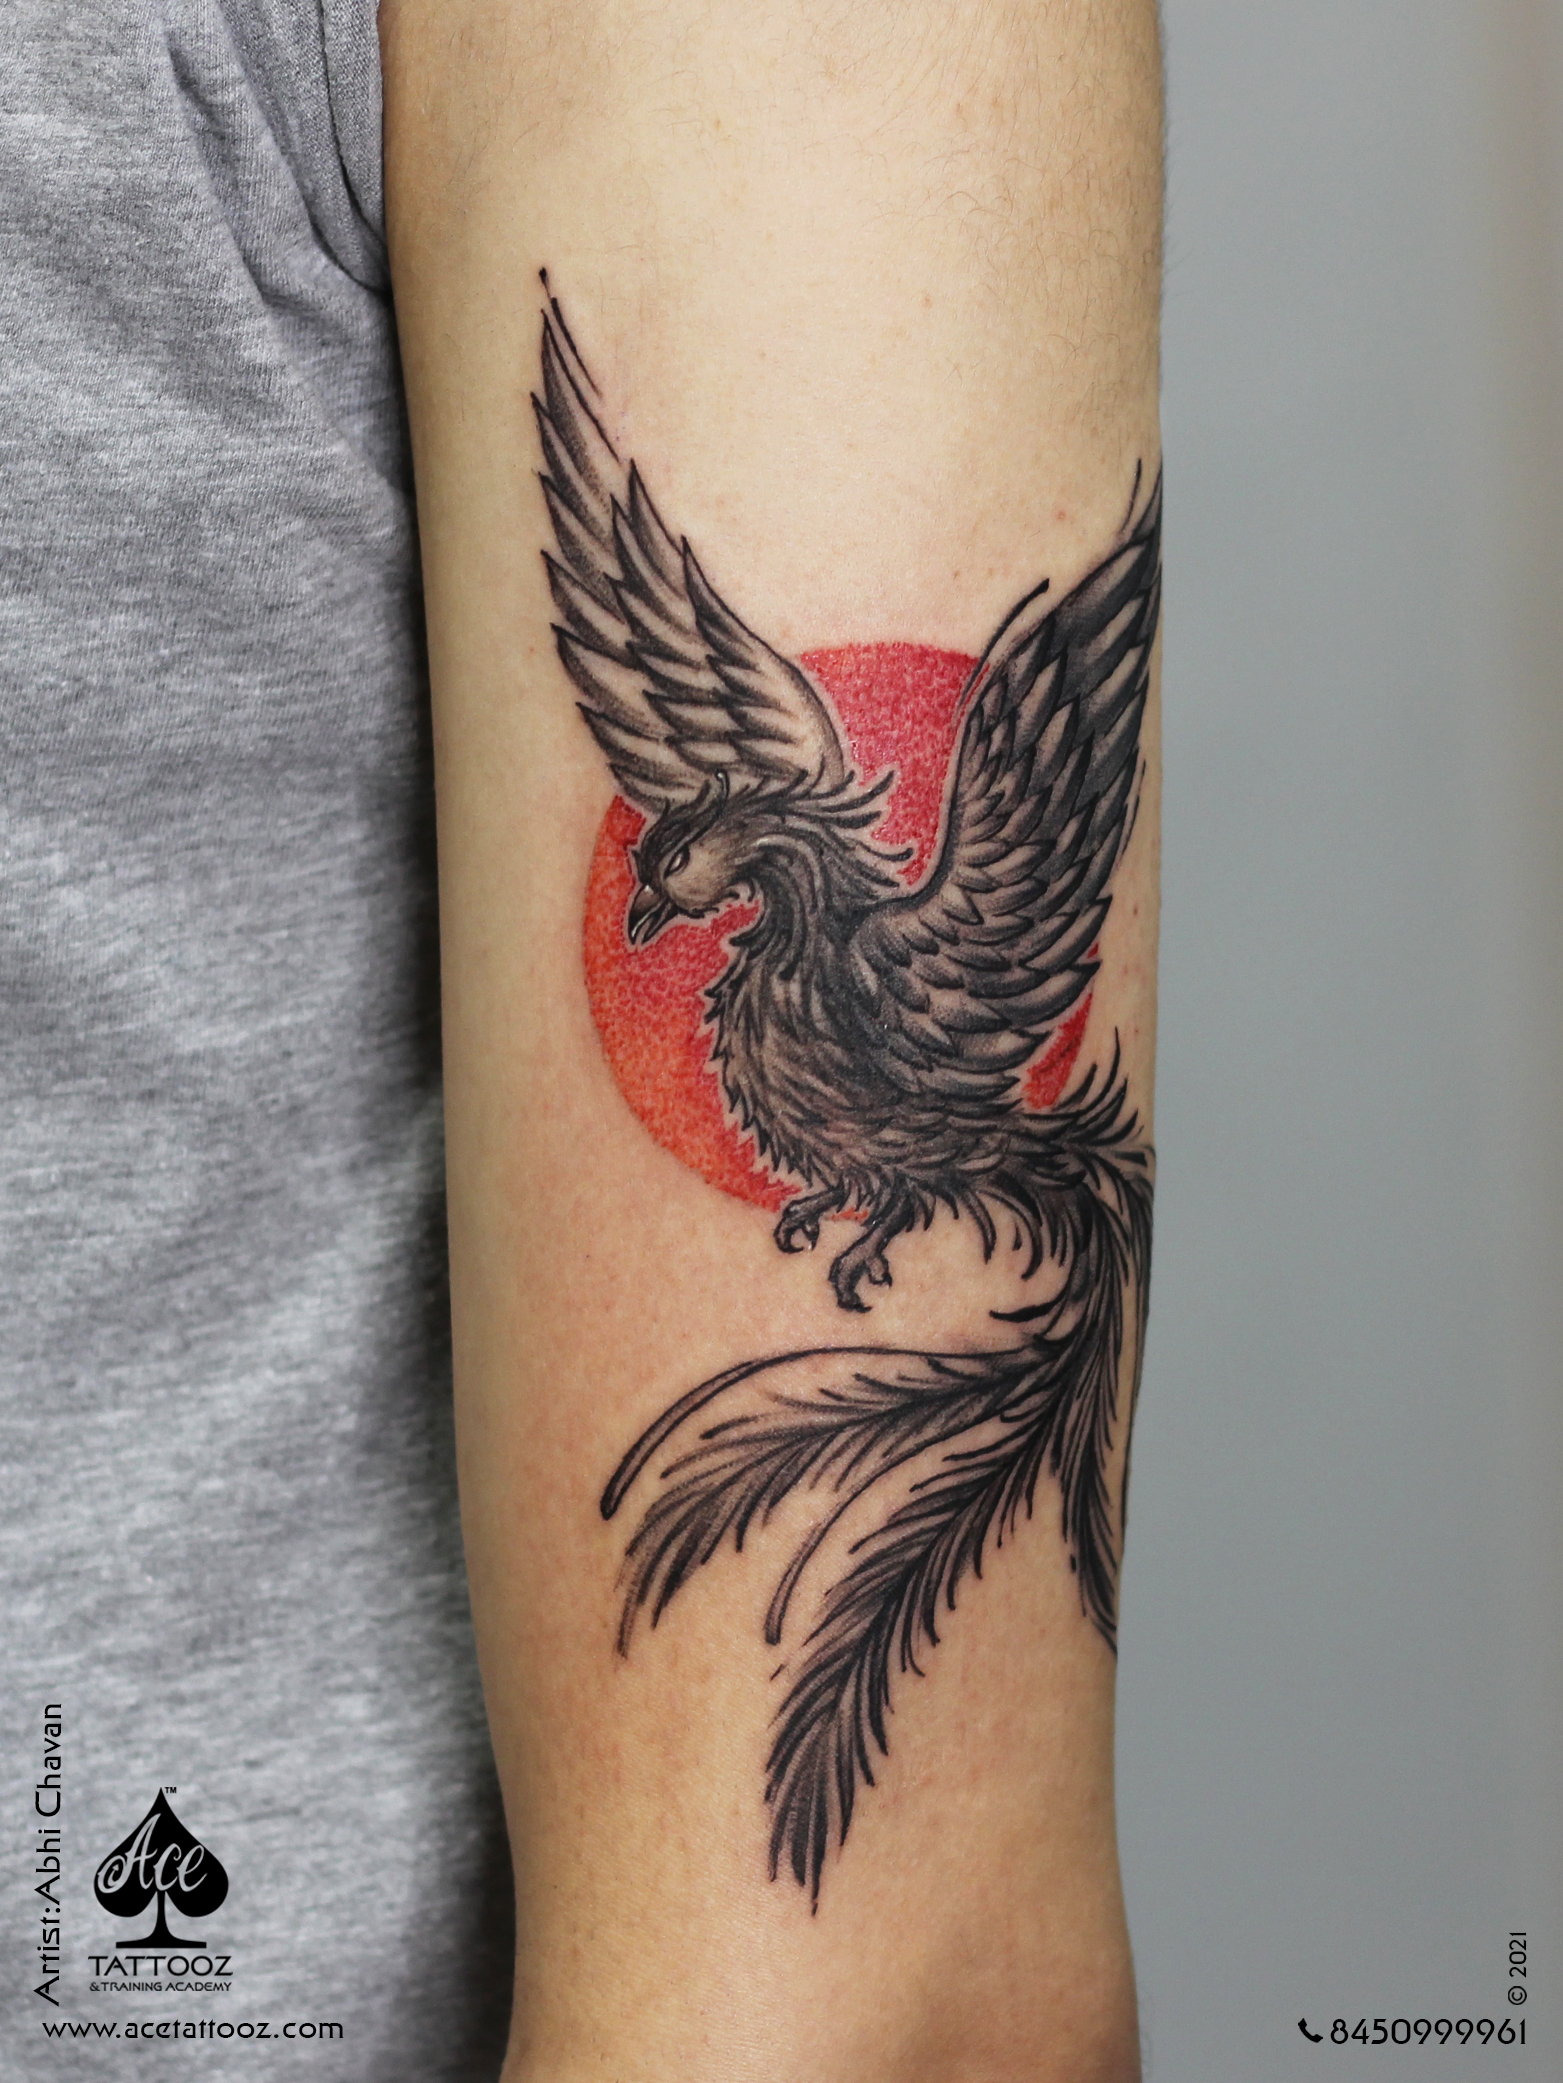 Phoenix Temporary Tattoo / Still I Rise - Etsy